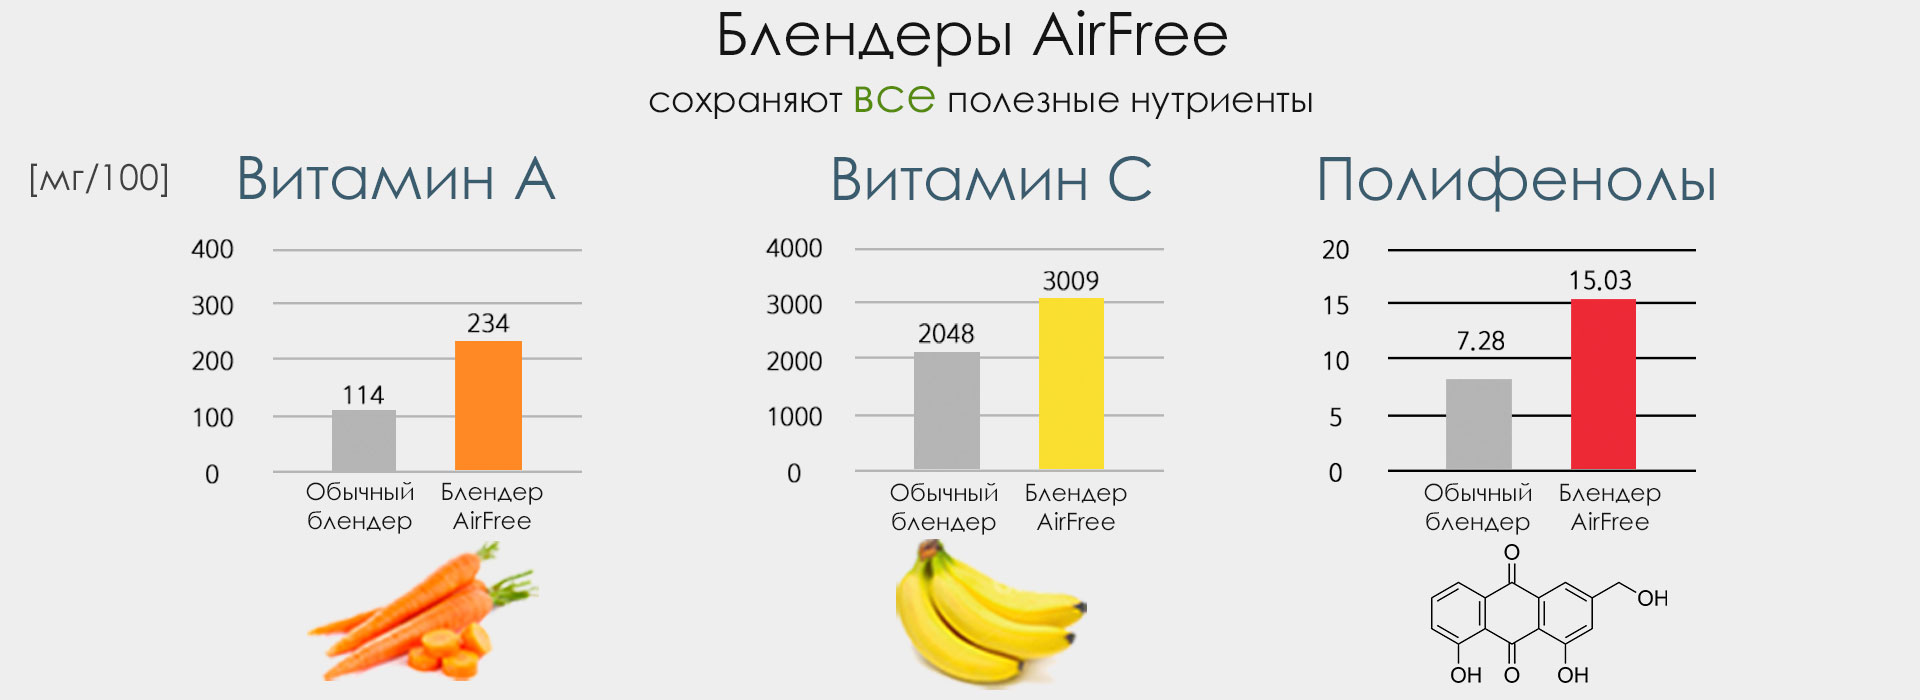 AirFree R9 купить в Красноярске